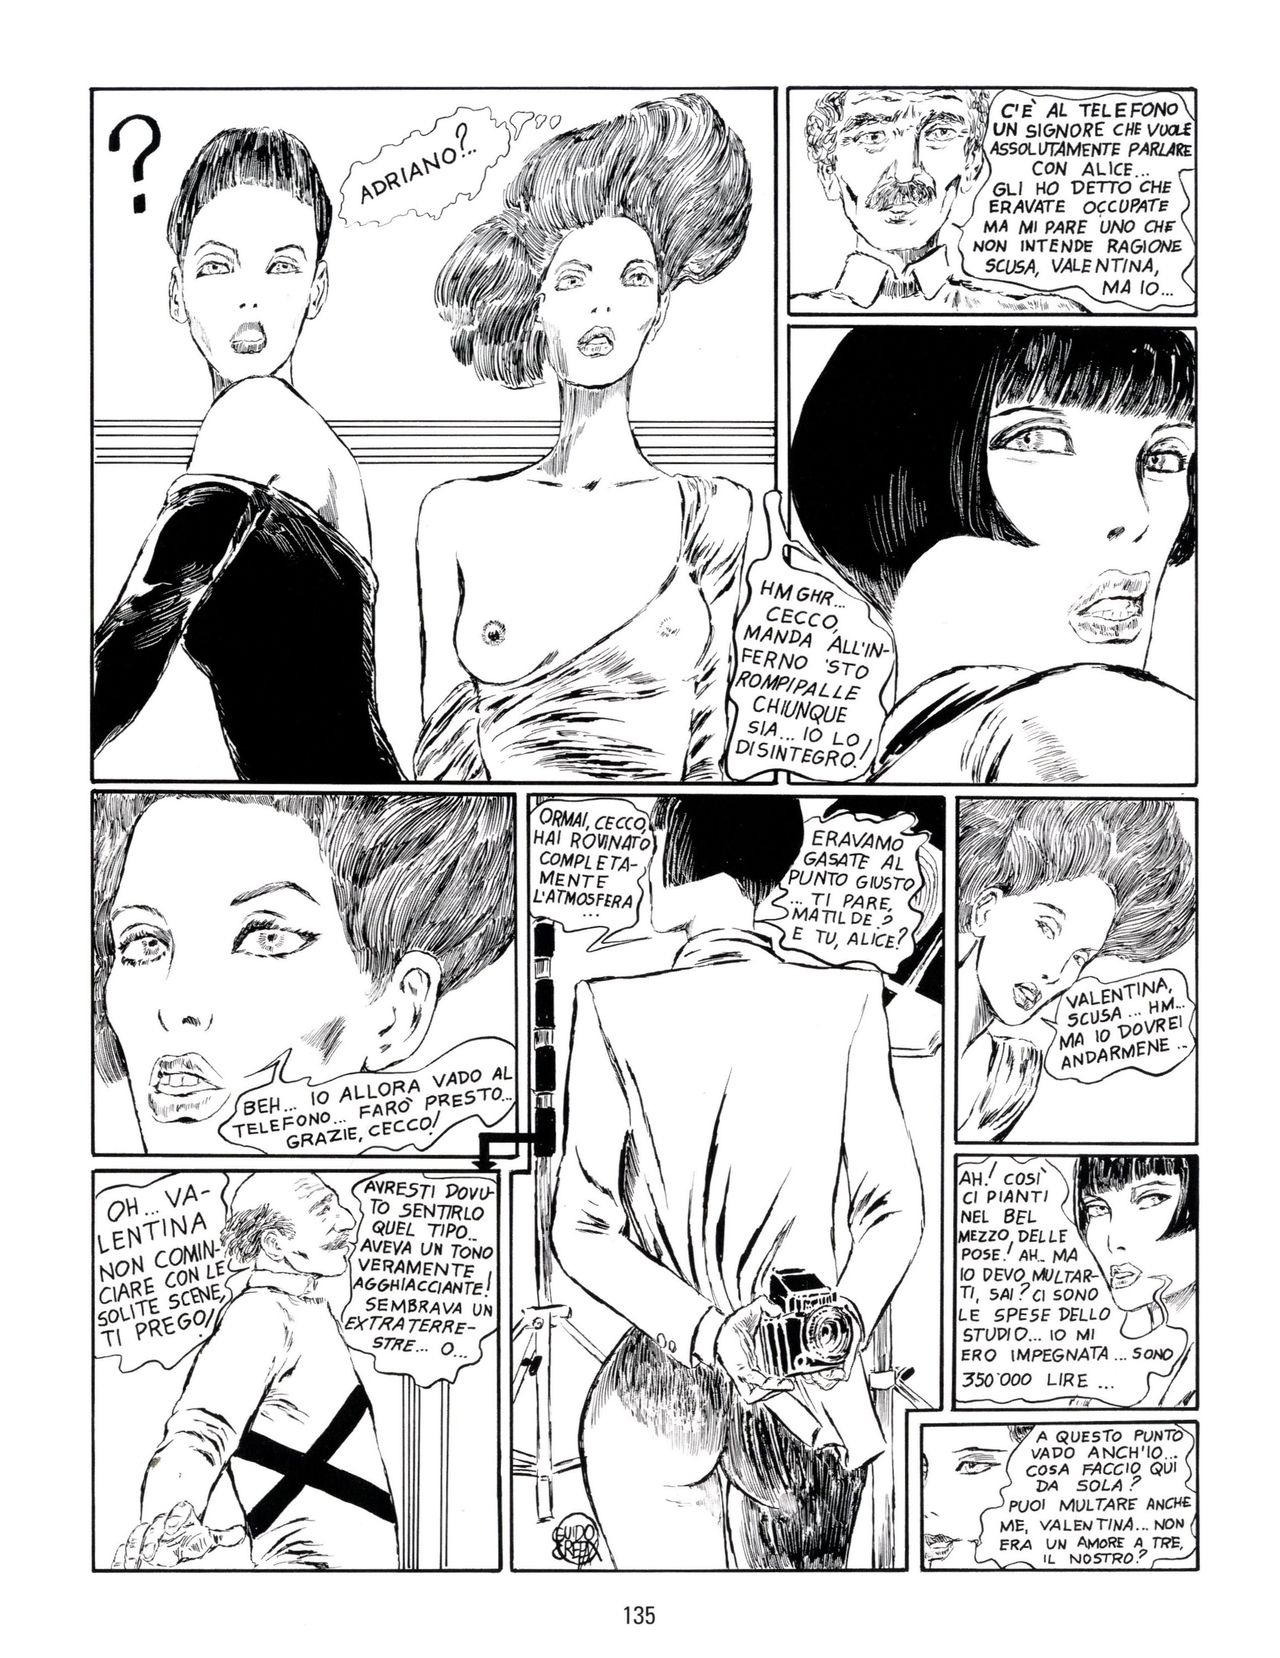 [Guido Crepax] Erotica Fumetti #29 : Arrivederci Valentina? : Verso una nuova vita [Italian] 138